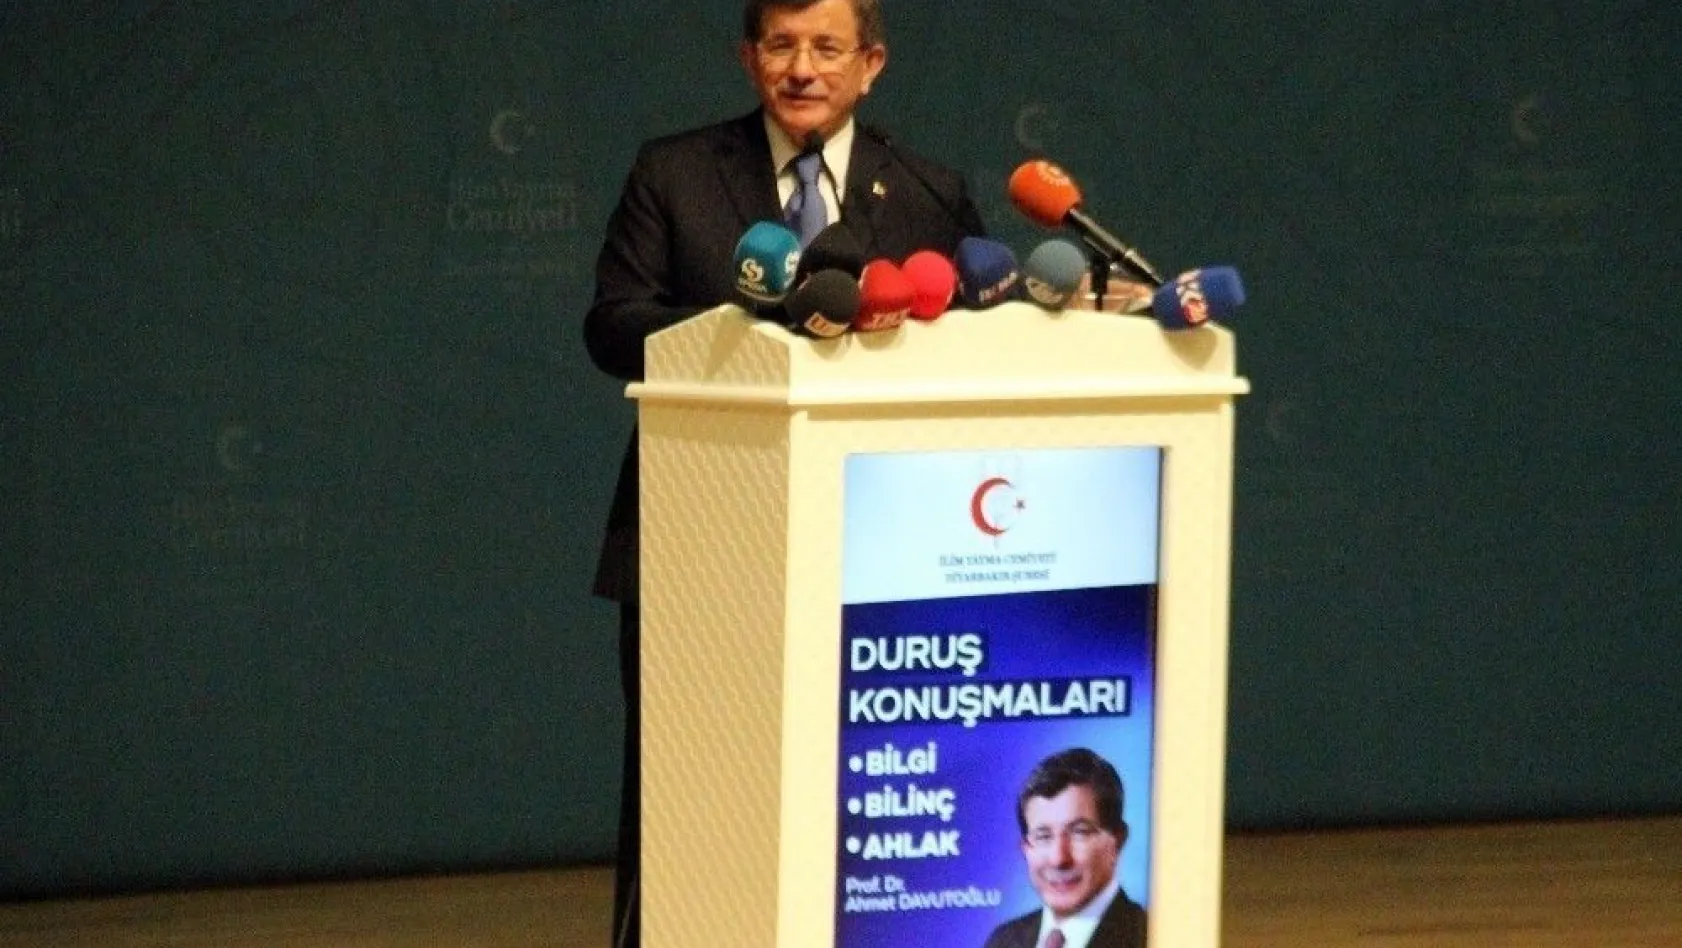 Eski Başbakan Davutoğlu: 'Bunların hepsi aynı kirli zihniyetin yansımalarıdır'
